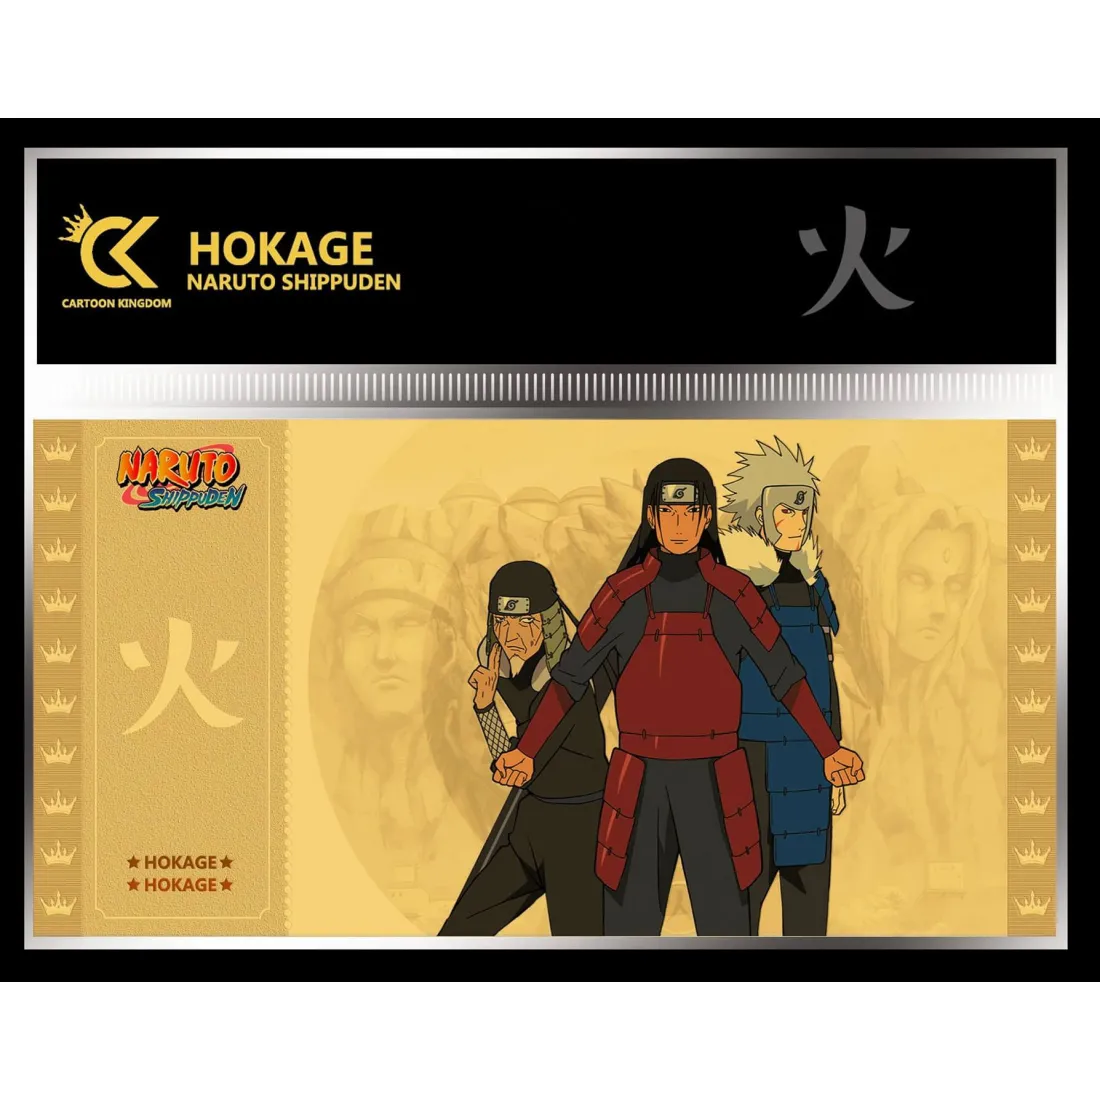 Hokage - Naruto Shippuden